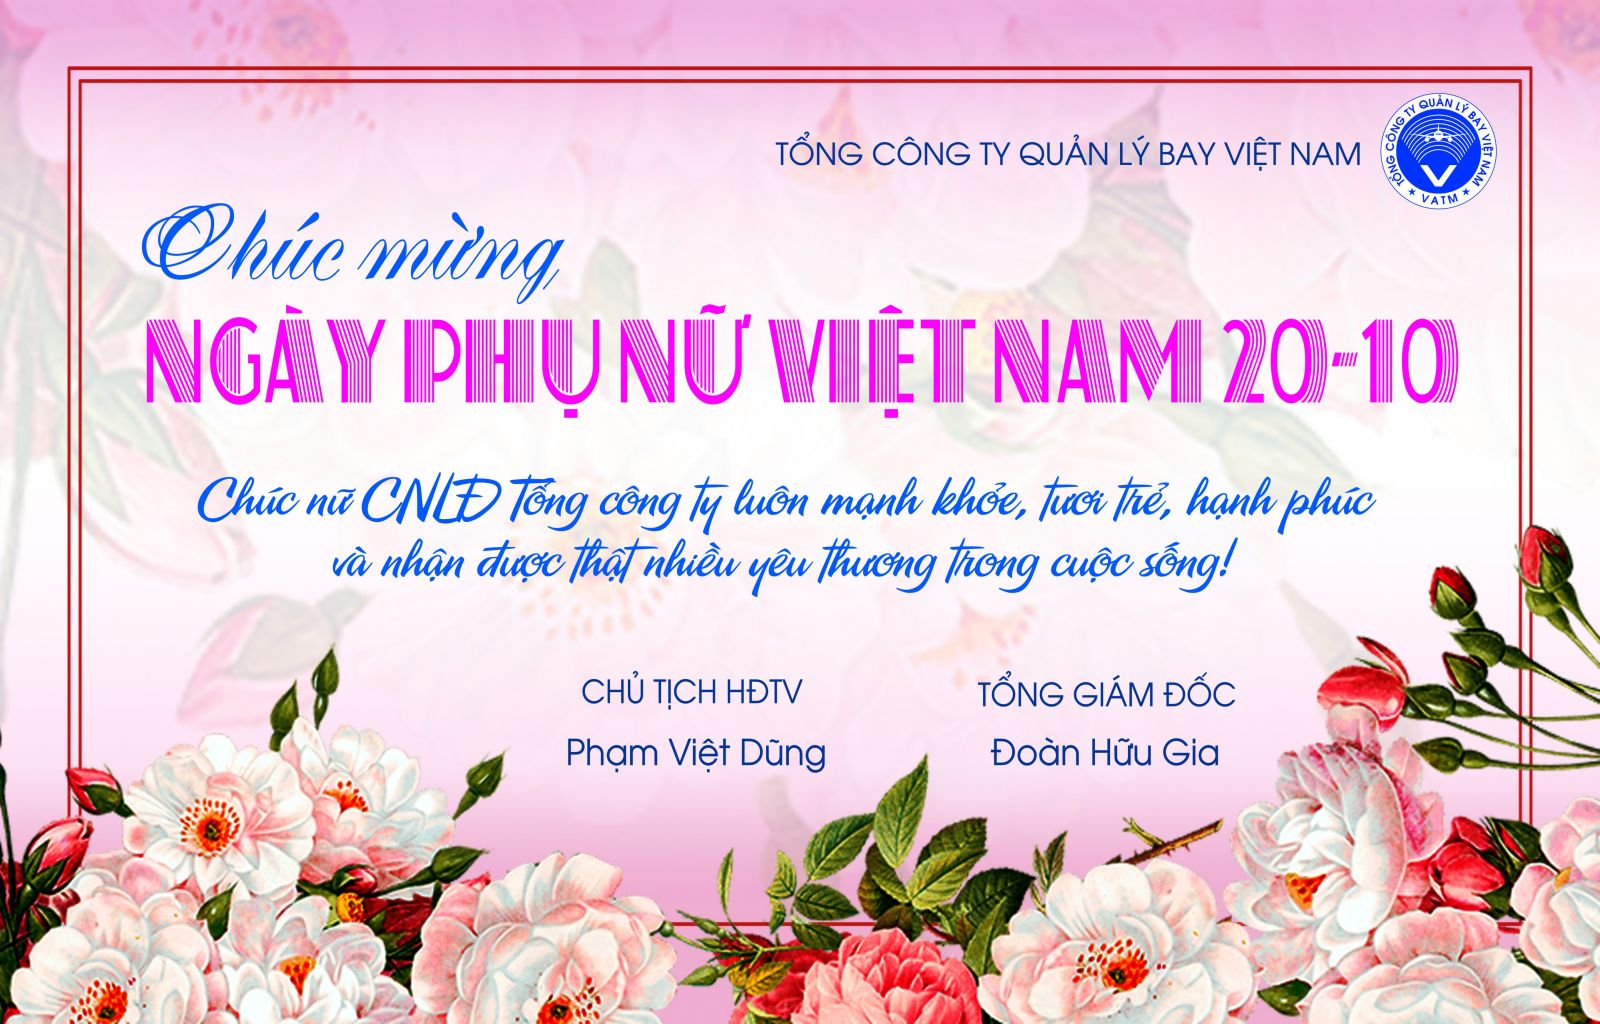 Ngày Phụ nữ Việt Nam là ngày để tôn vinh và kính trọng những người phụ nữ giàu tình yêu thương, sự nhẫn nại, tính cao đẹp. Chúng tôi hiểu rằng lựa chọn một món quà cho phái đẹp không hề dễ dàng, và đó cũng chính là lý do mà chúng tôi đã tạo ra ưu đãi đặc biệt dành cho các sản phẩm của chúng tôi, giúp bạn có thể tặng những món quà ý nghĩa trong dịp đặc biệt này.